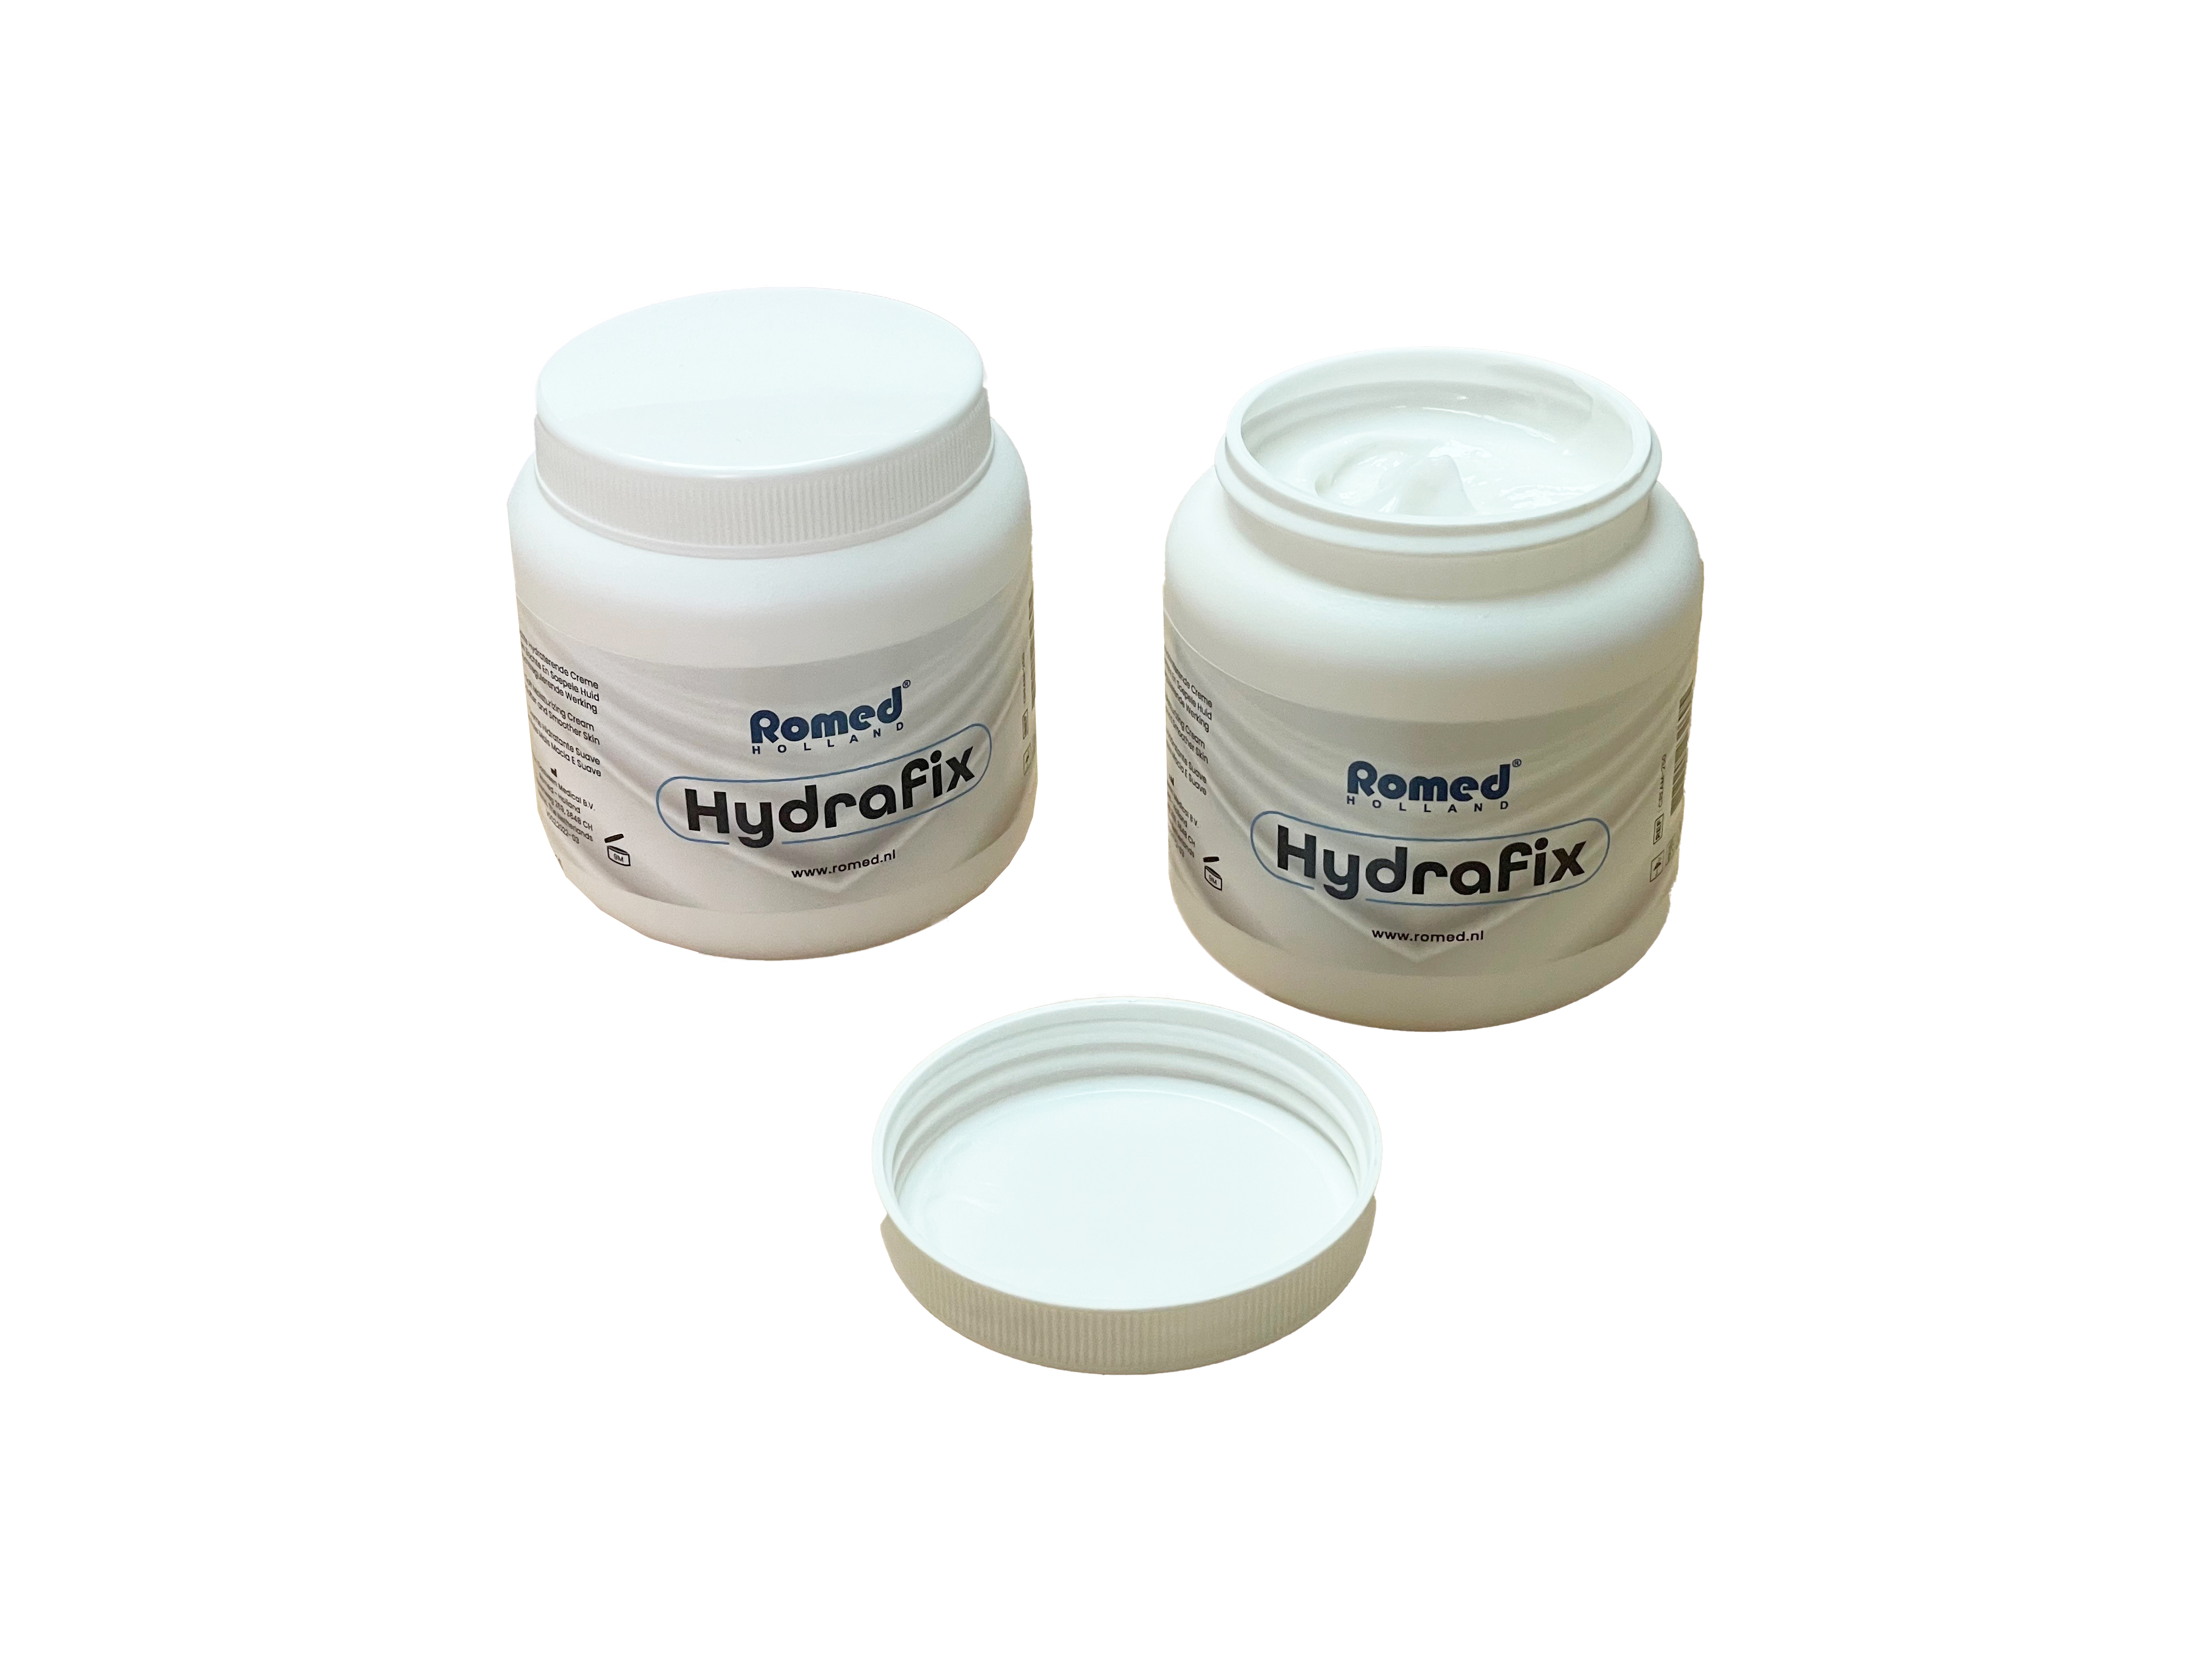 Hydrafix cream